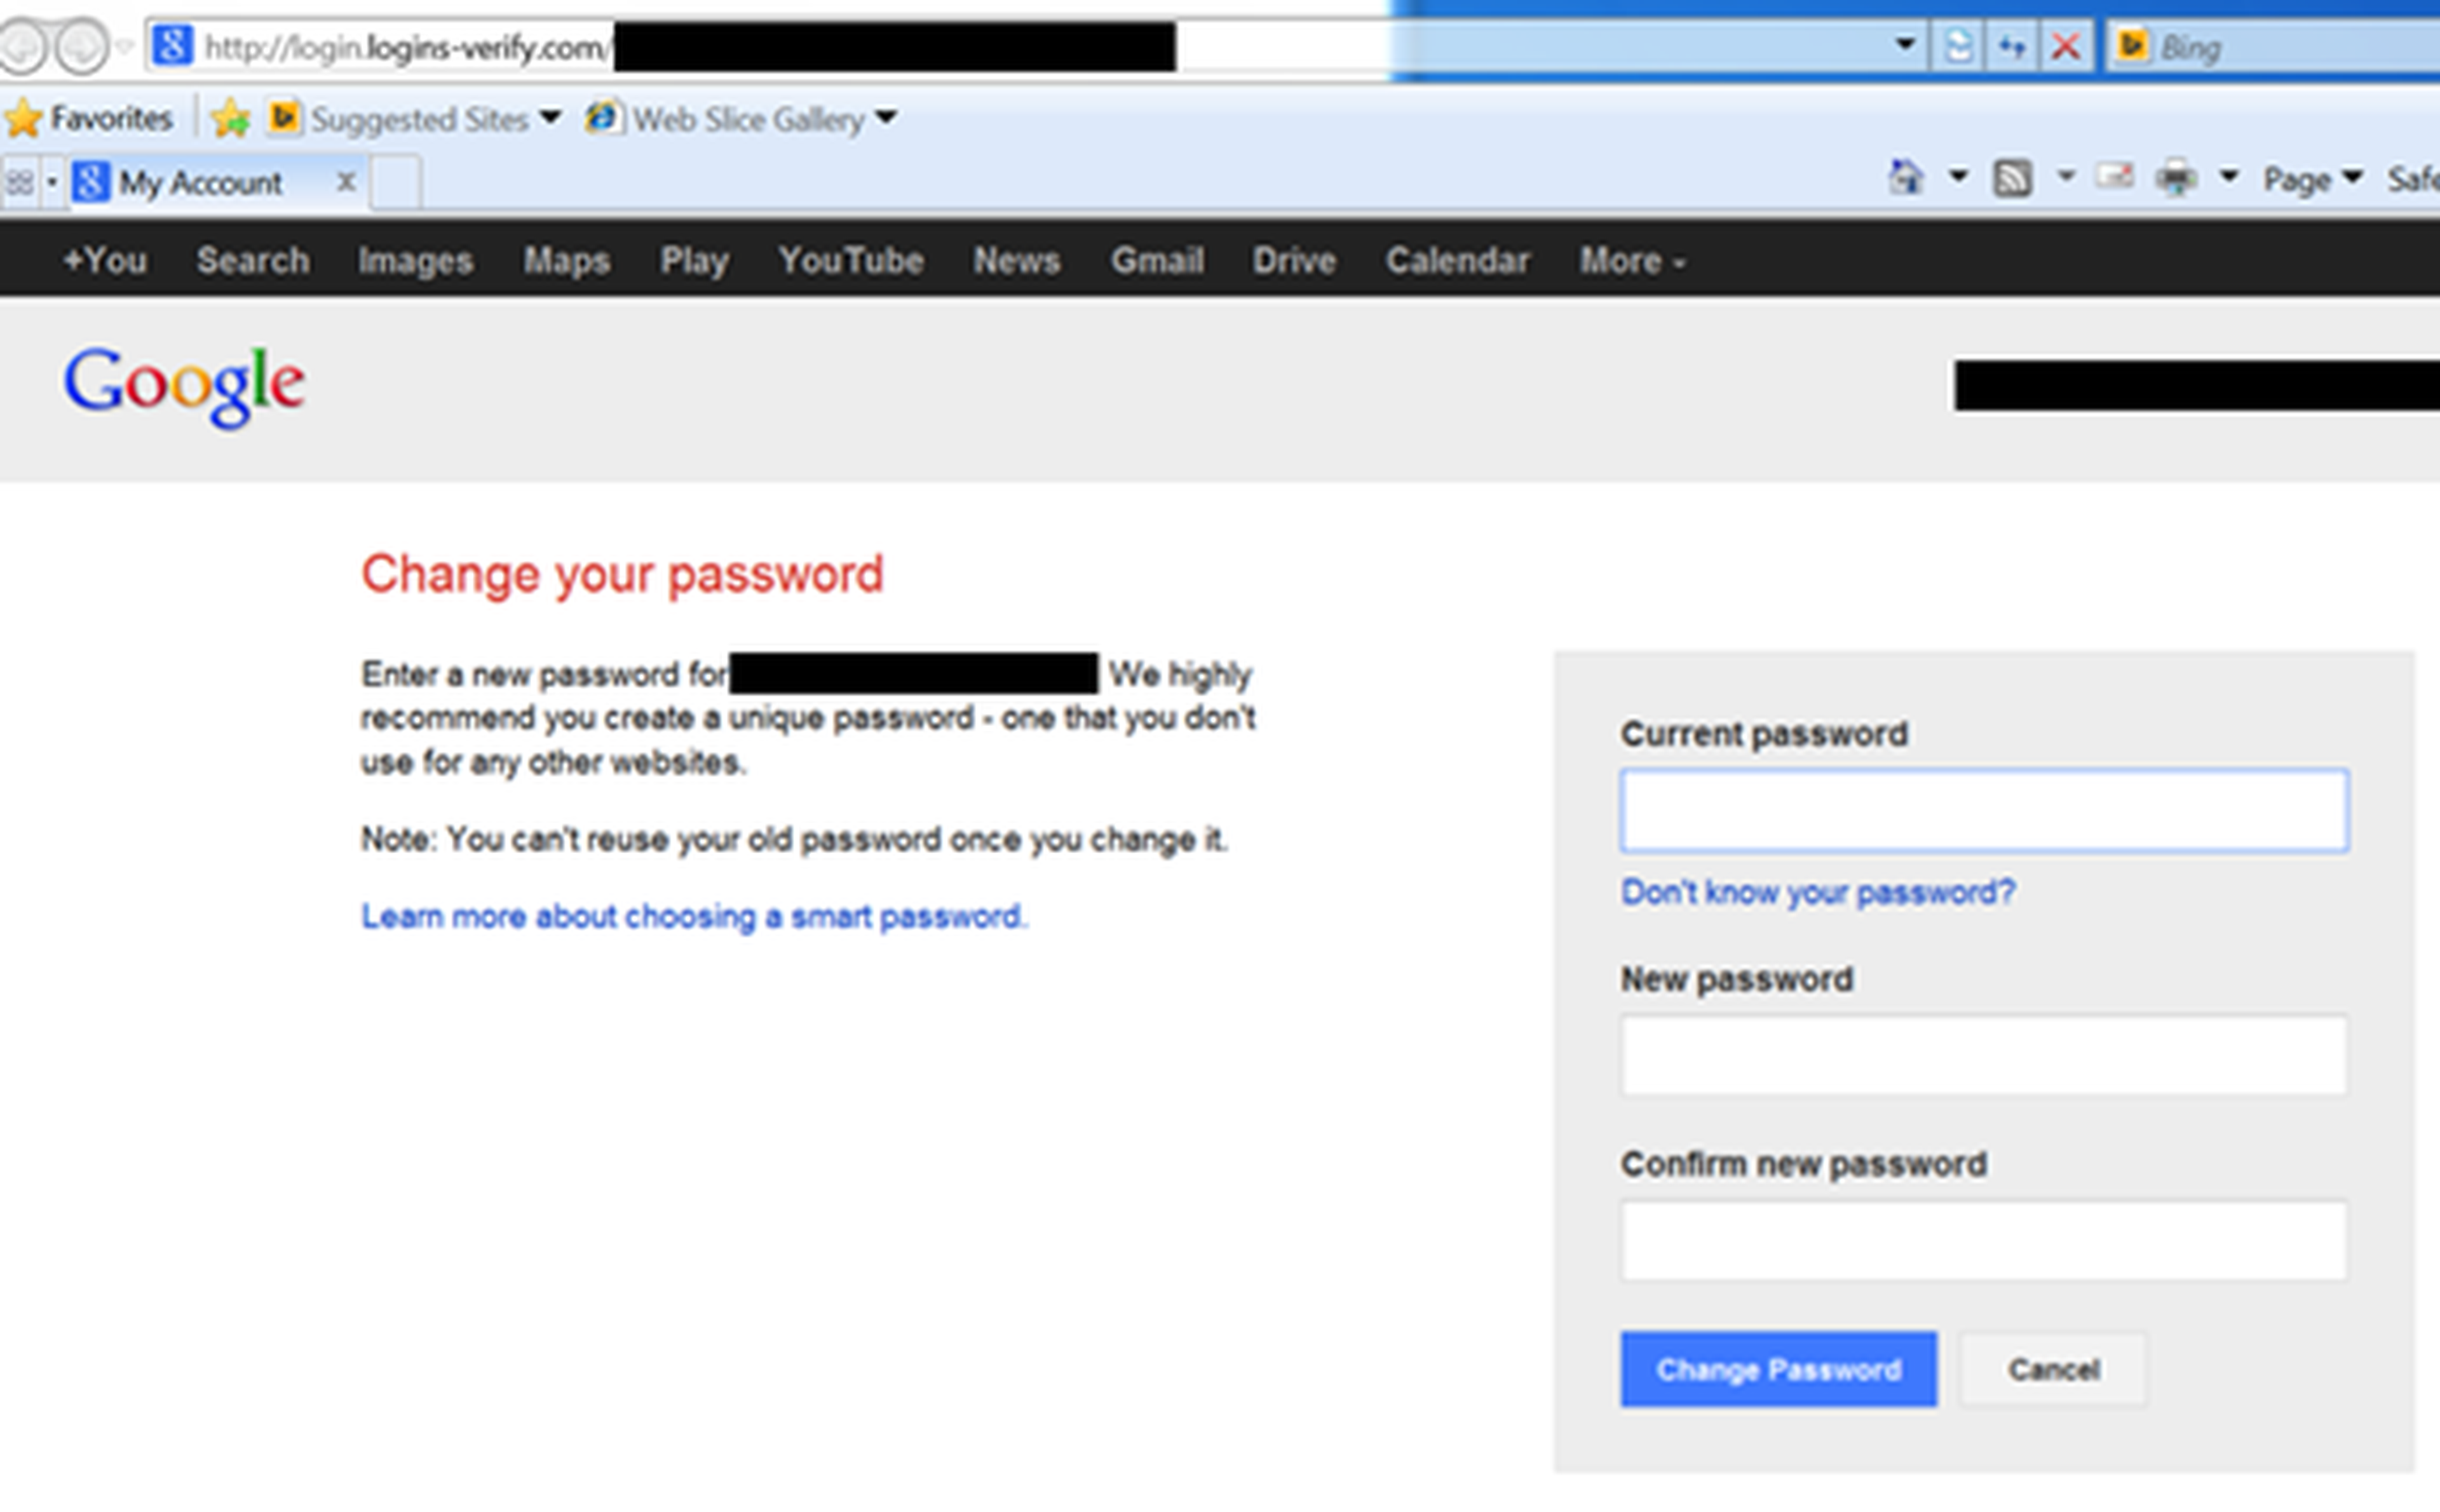 ¡Cuidado! Hackers roban las claves de Google con un SMS falso